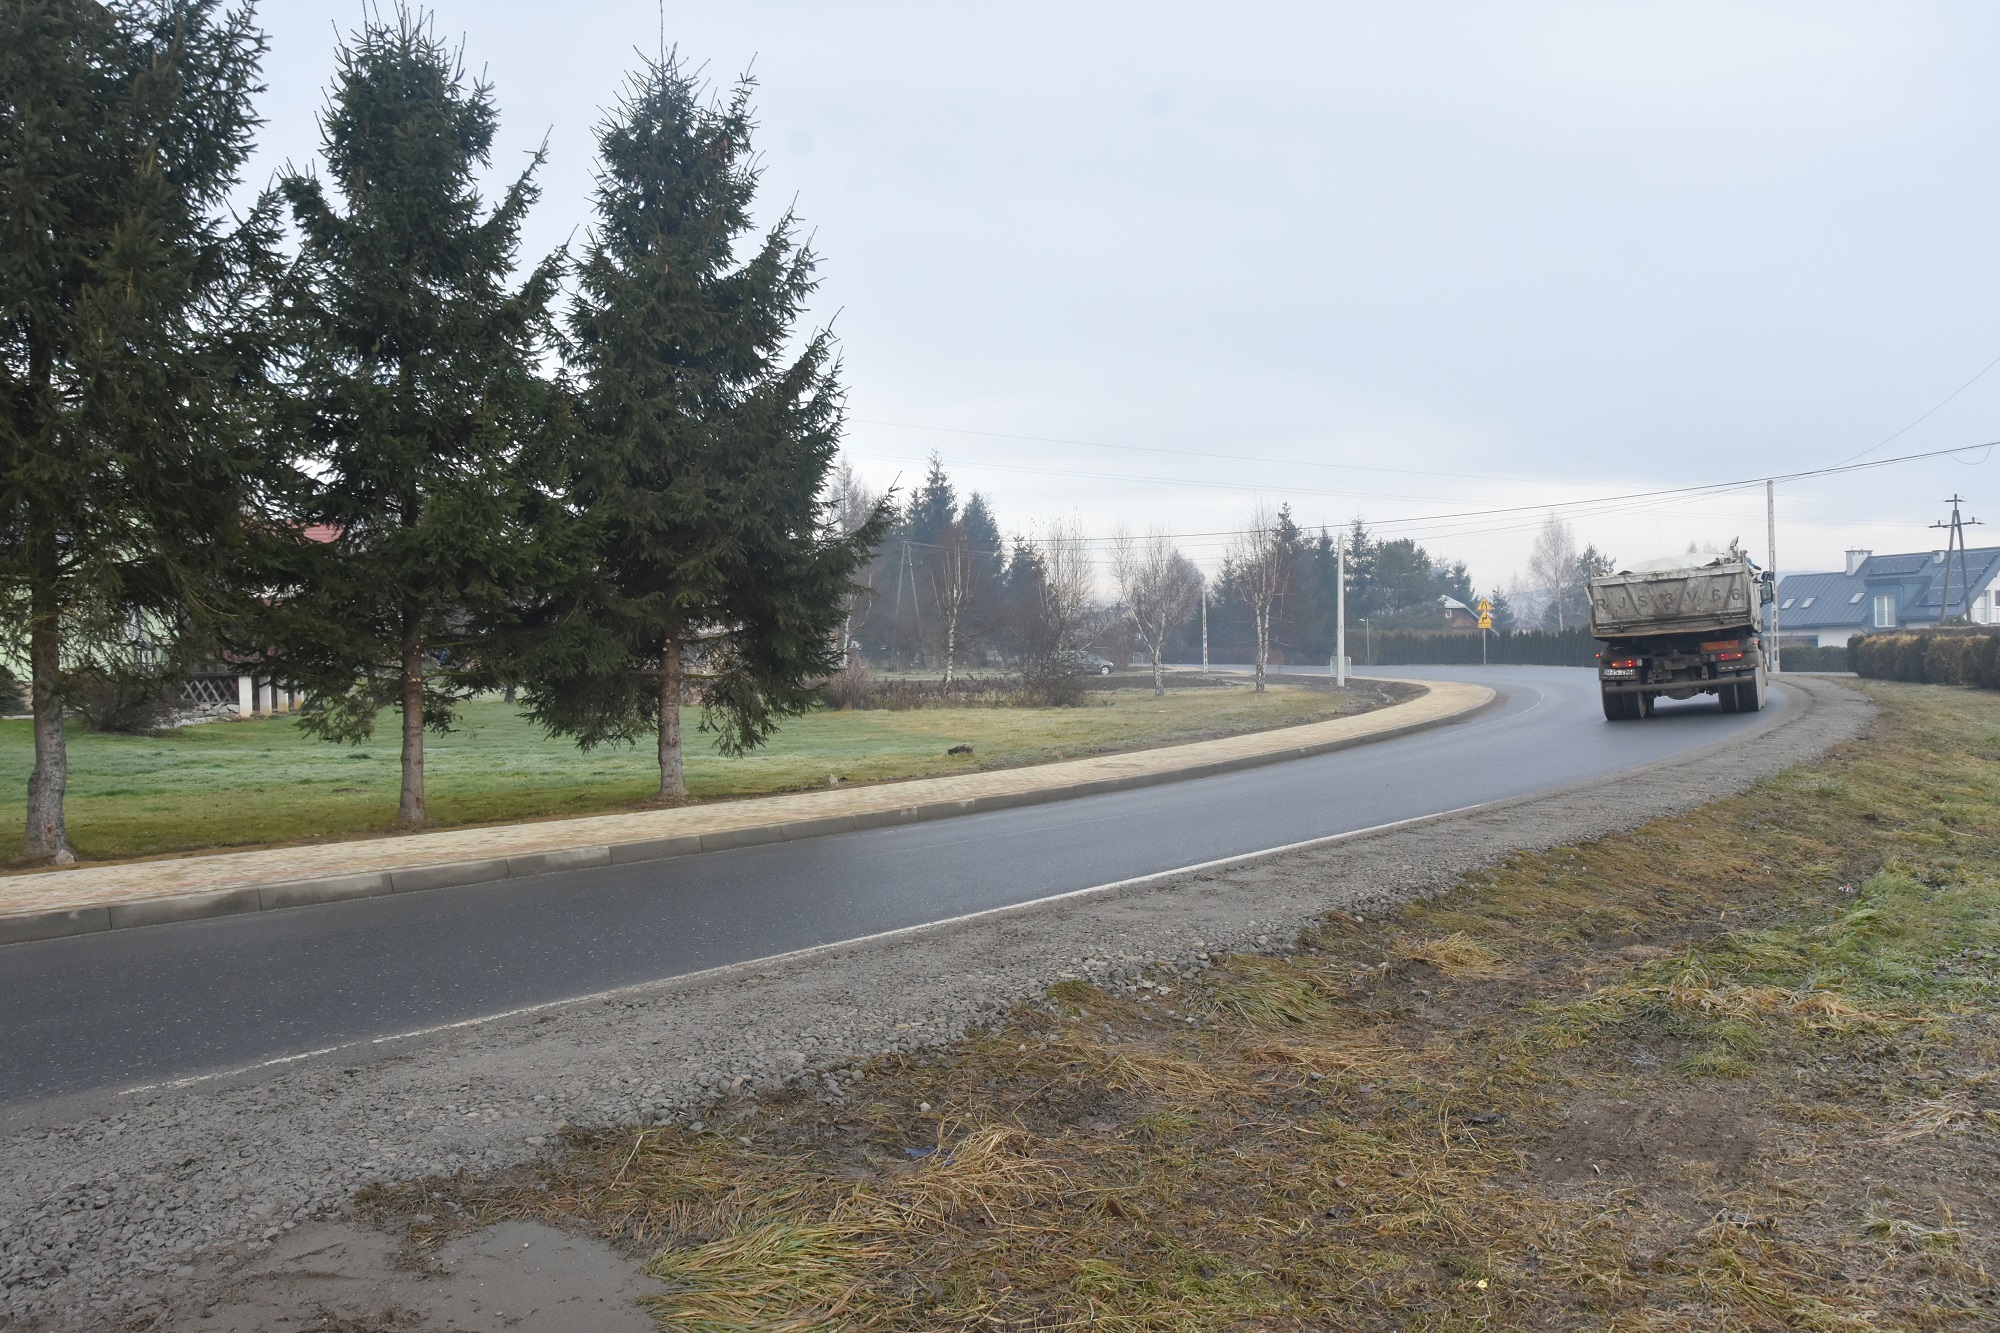 Widok na drogę główną przy której znajduje się nowo wybudowany chodnik oraz po której przejeżdża ciężarówka.